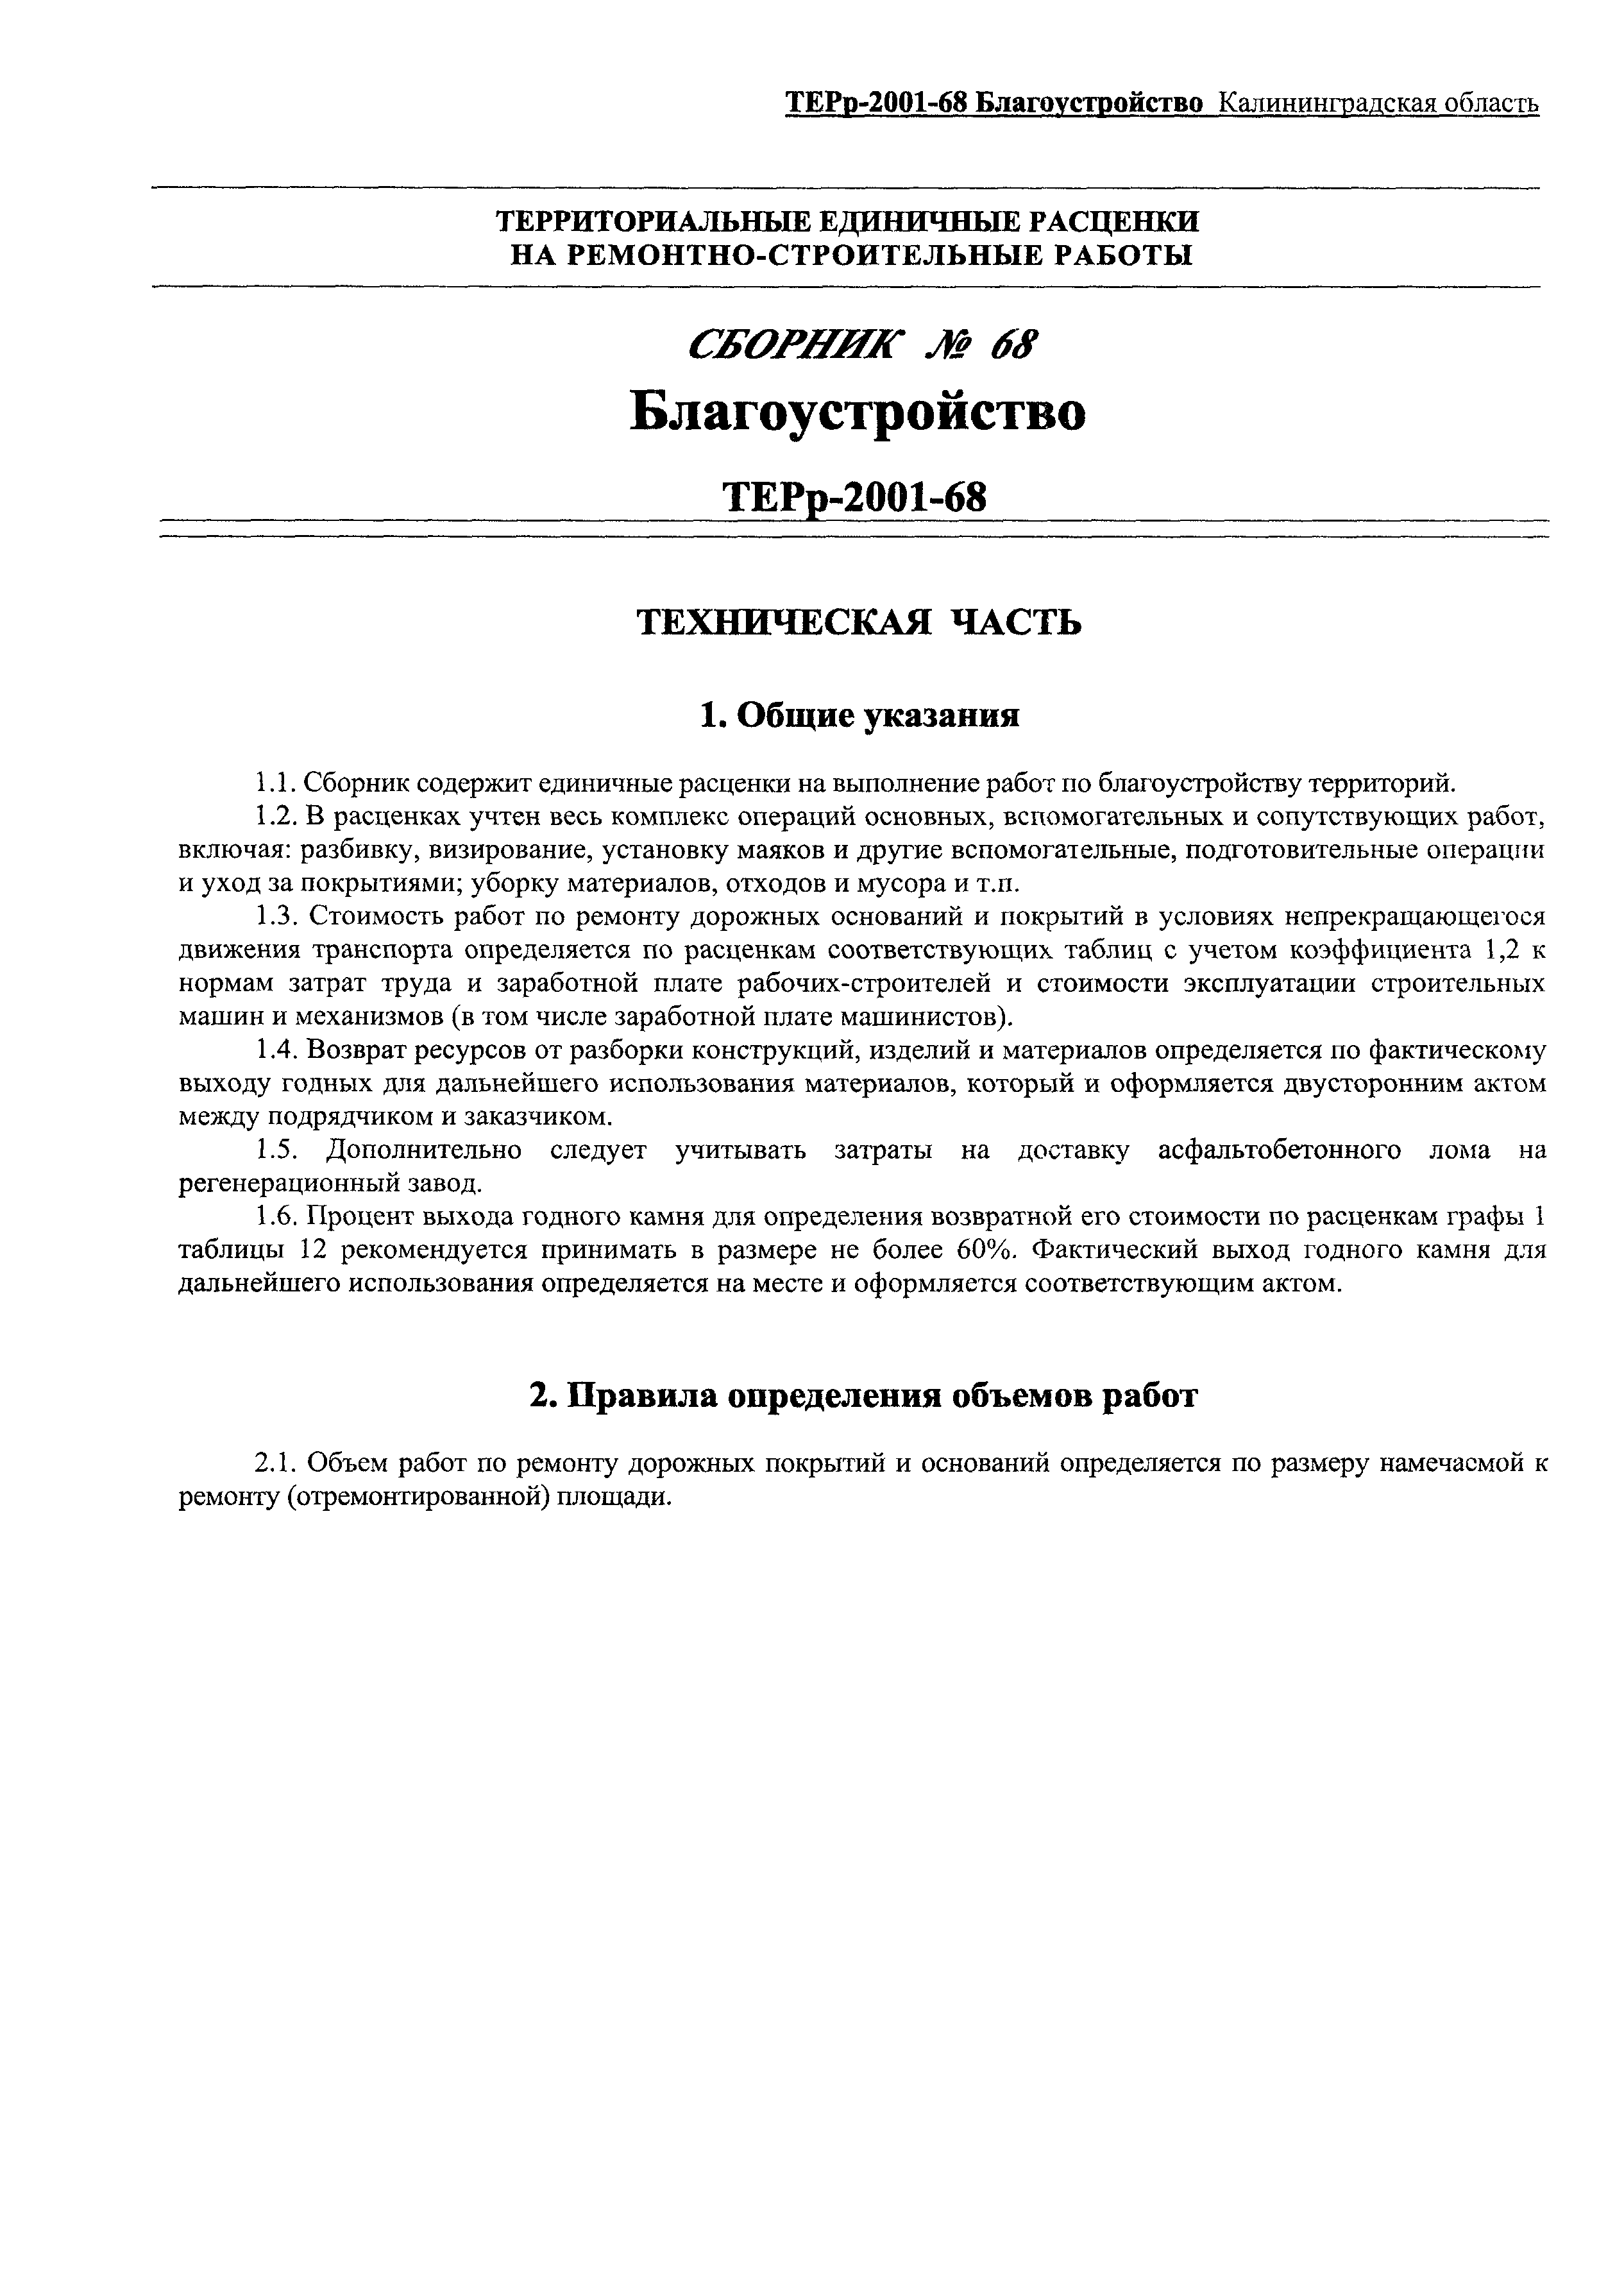 ТЕРр Калининградская область 2001-68